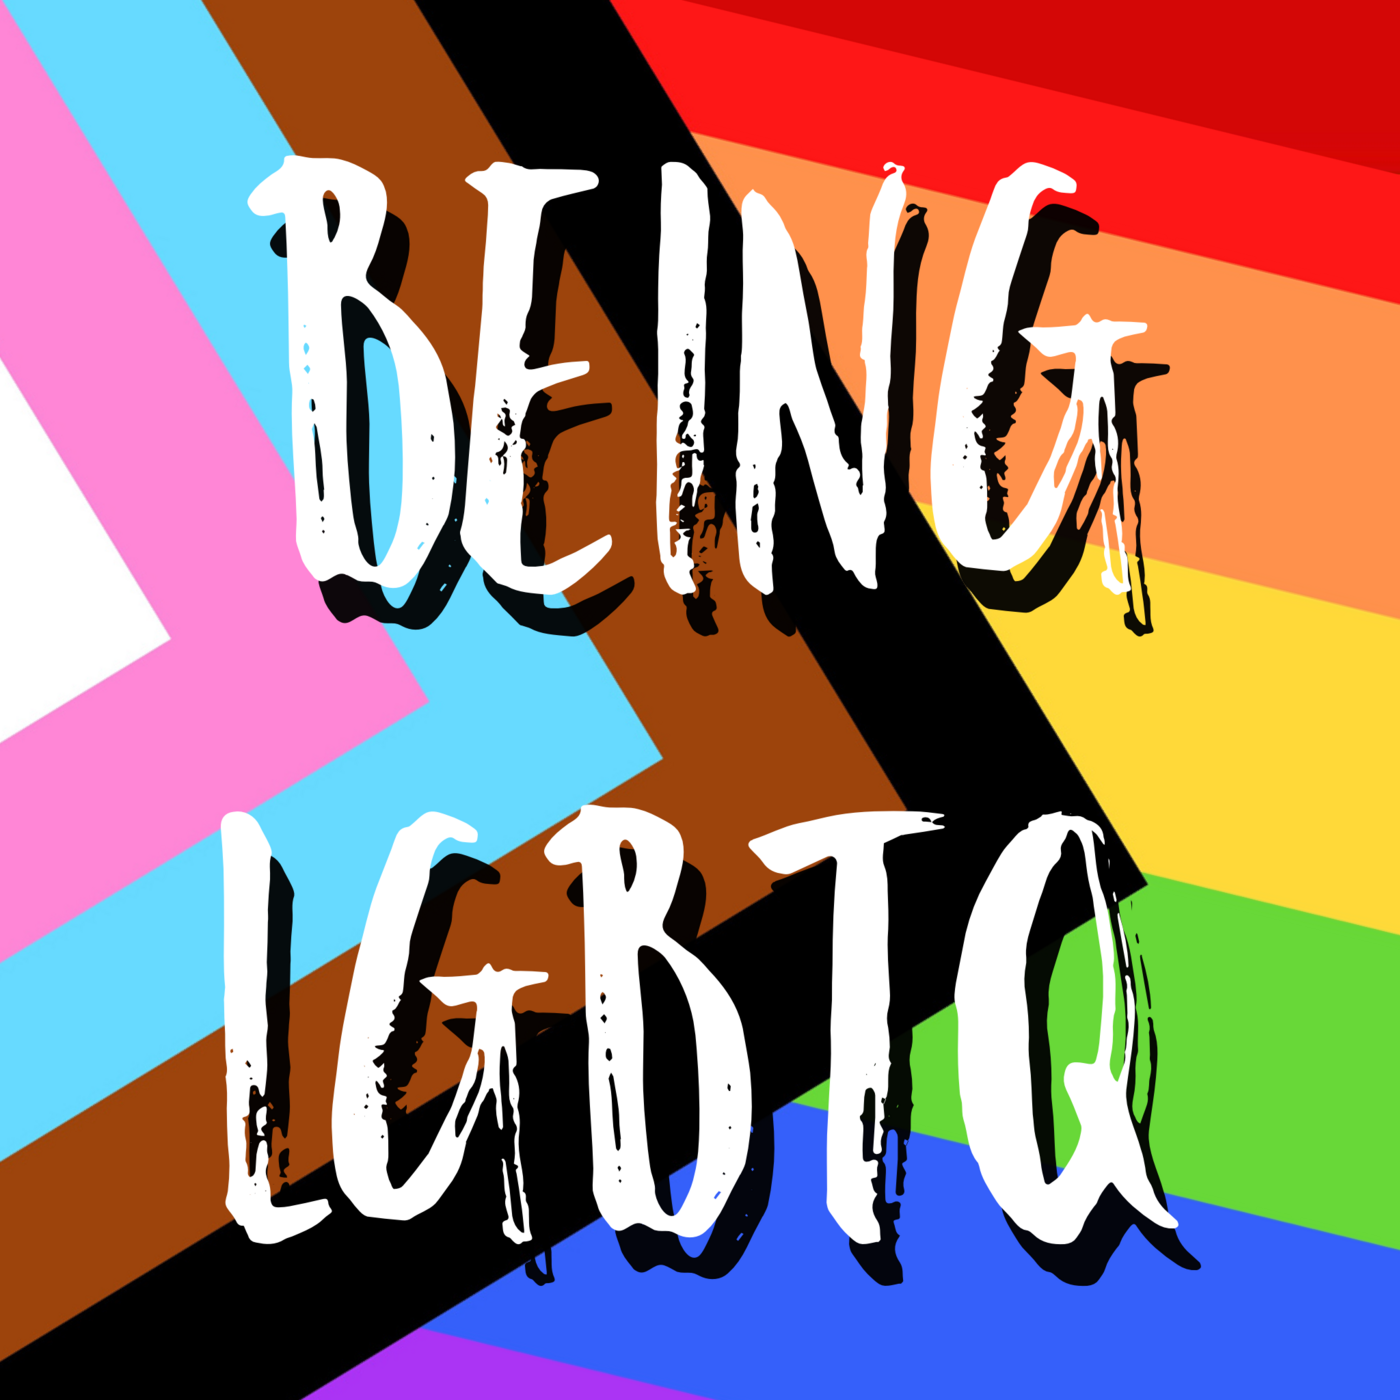 Being LGBTQ